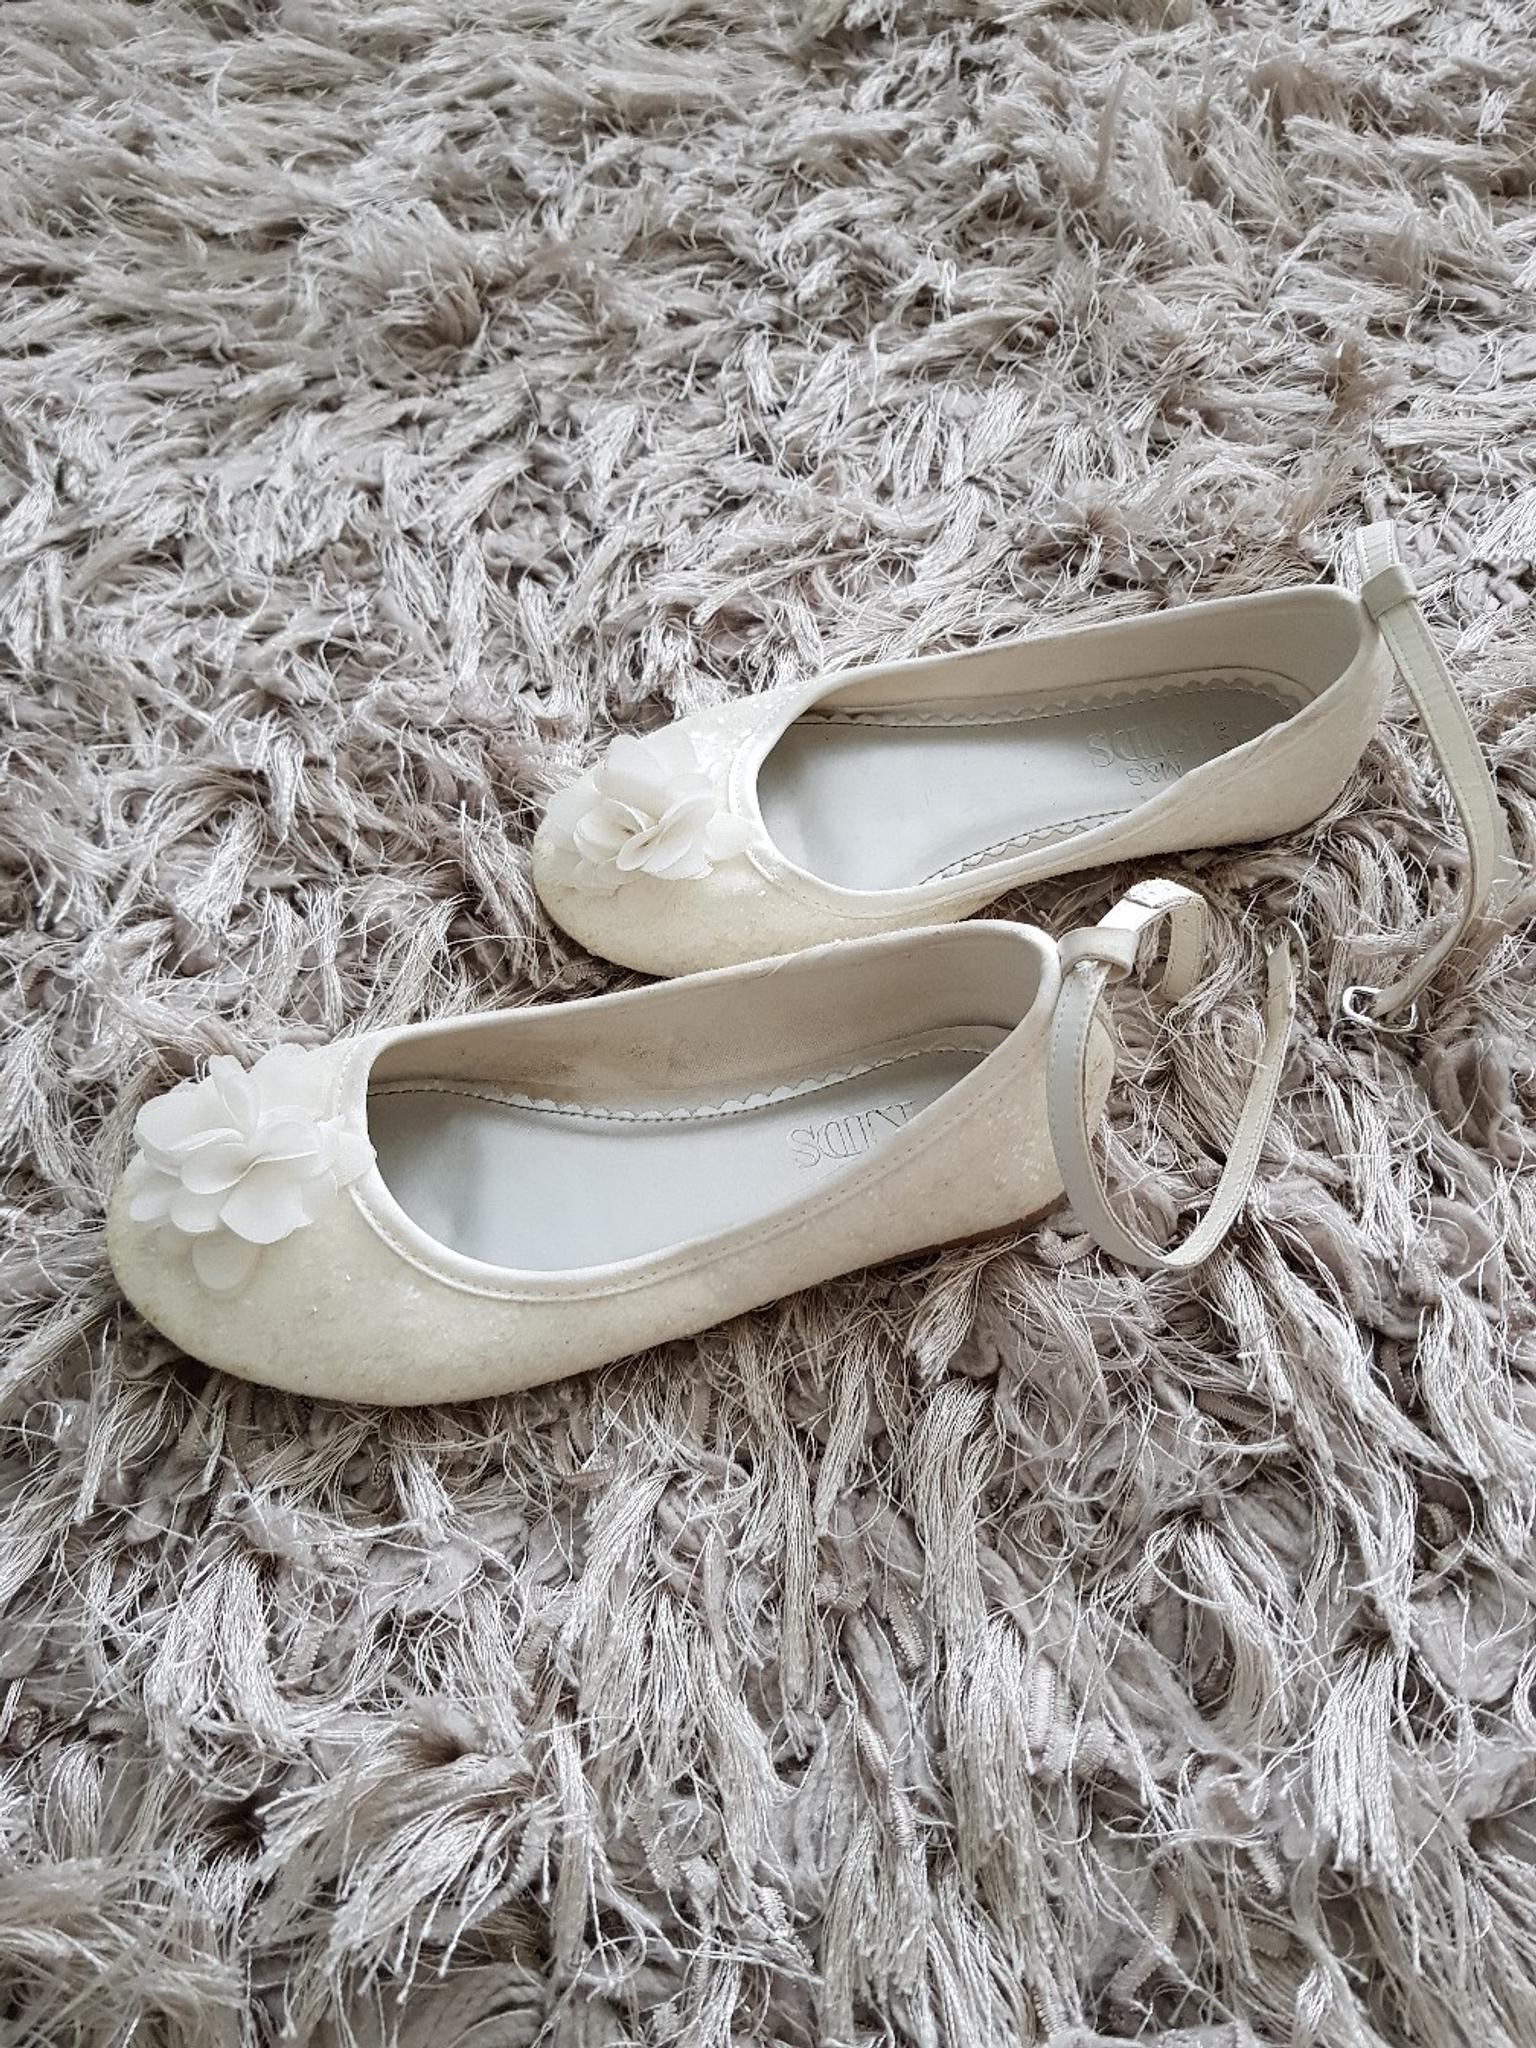 m&s ballet shoes